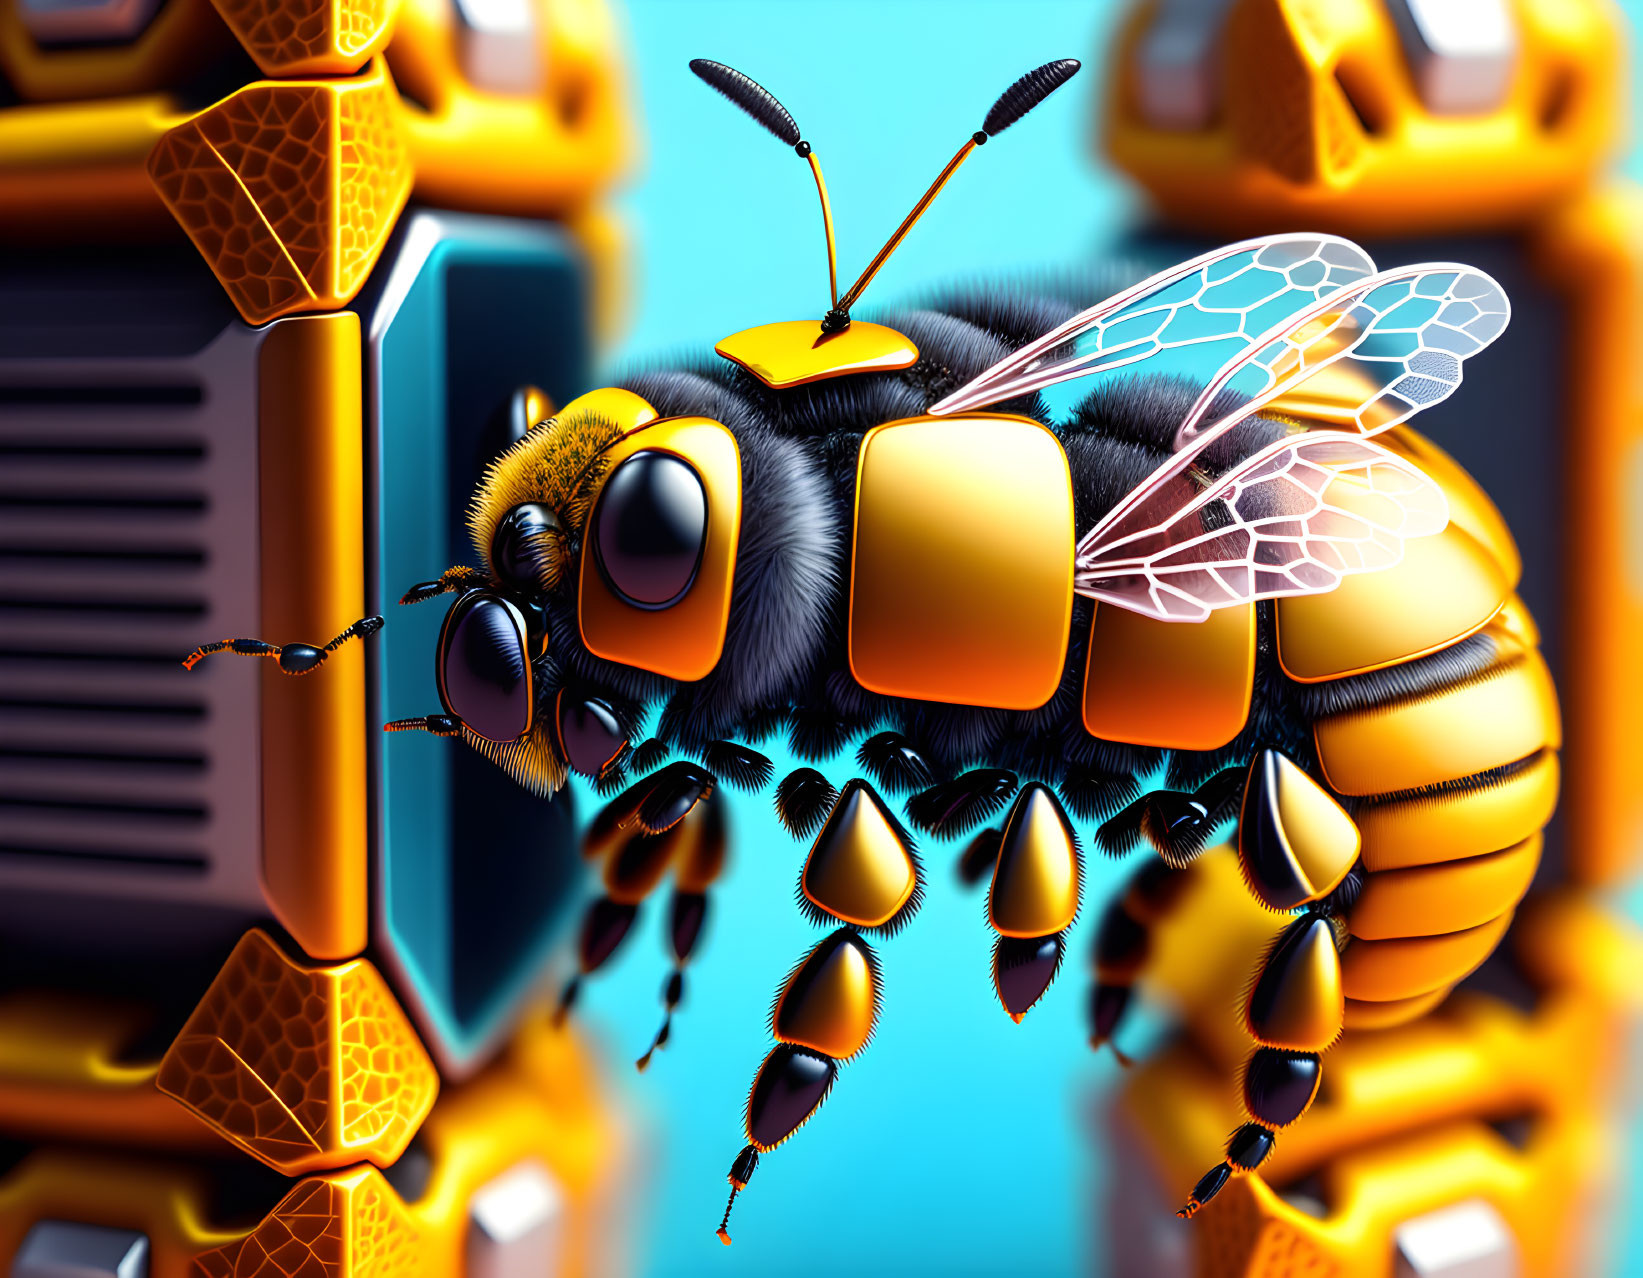 Digital bee